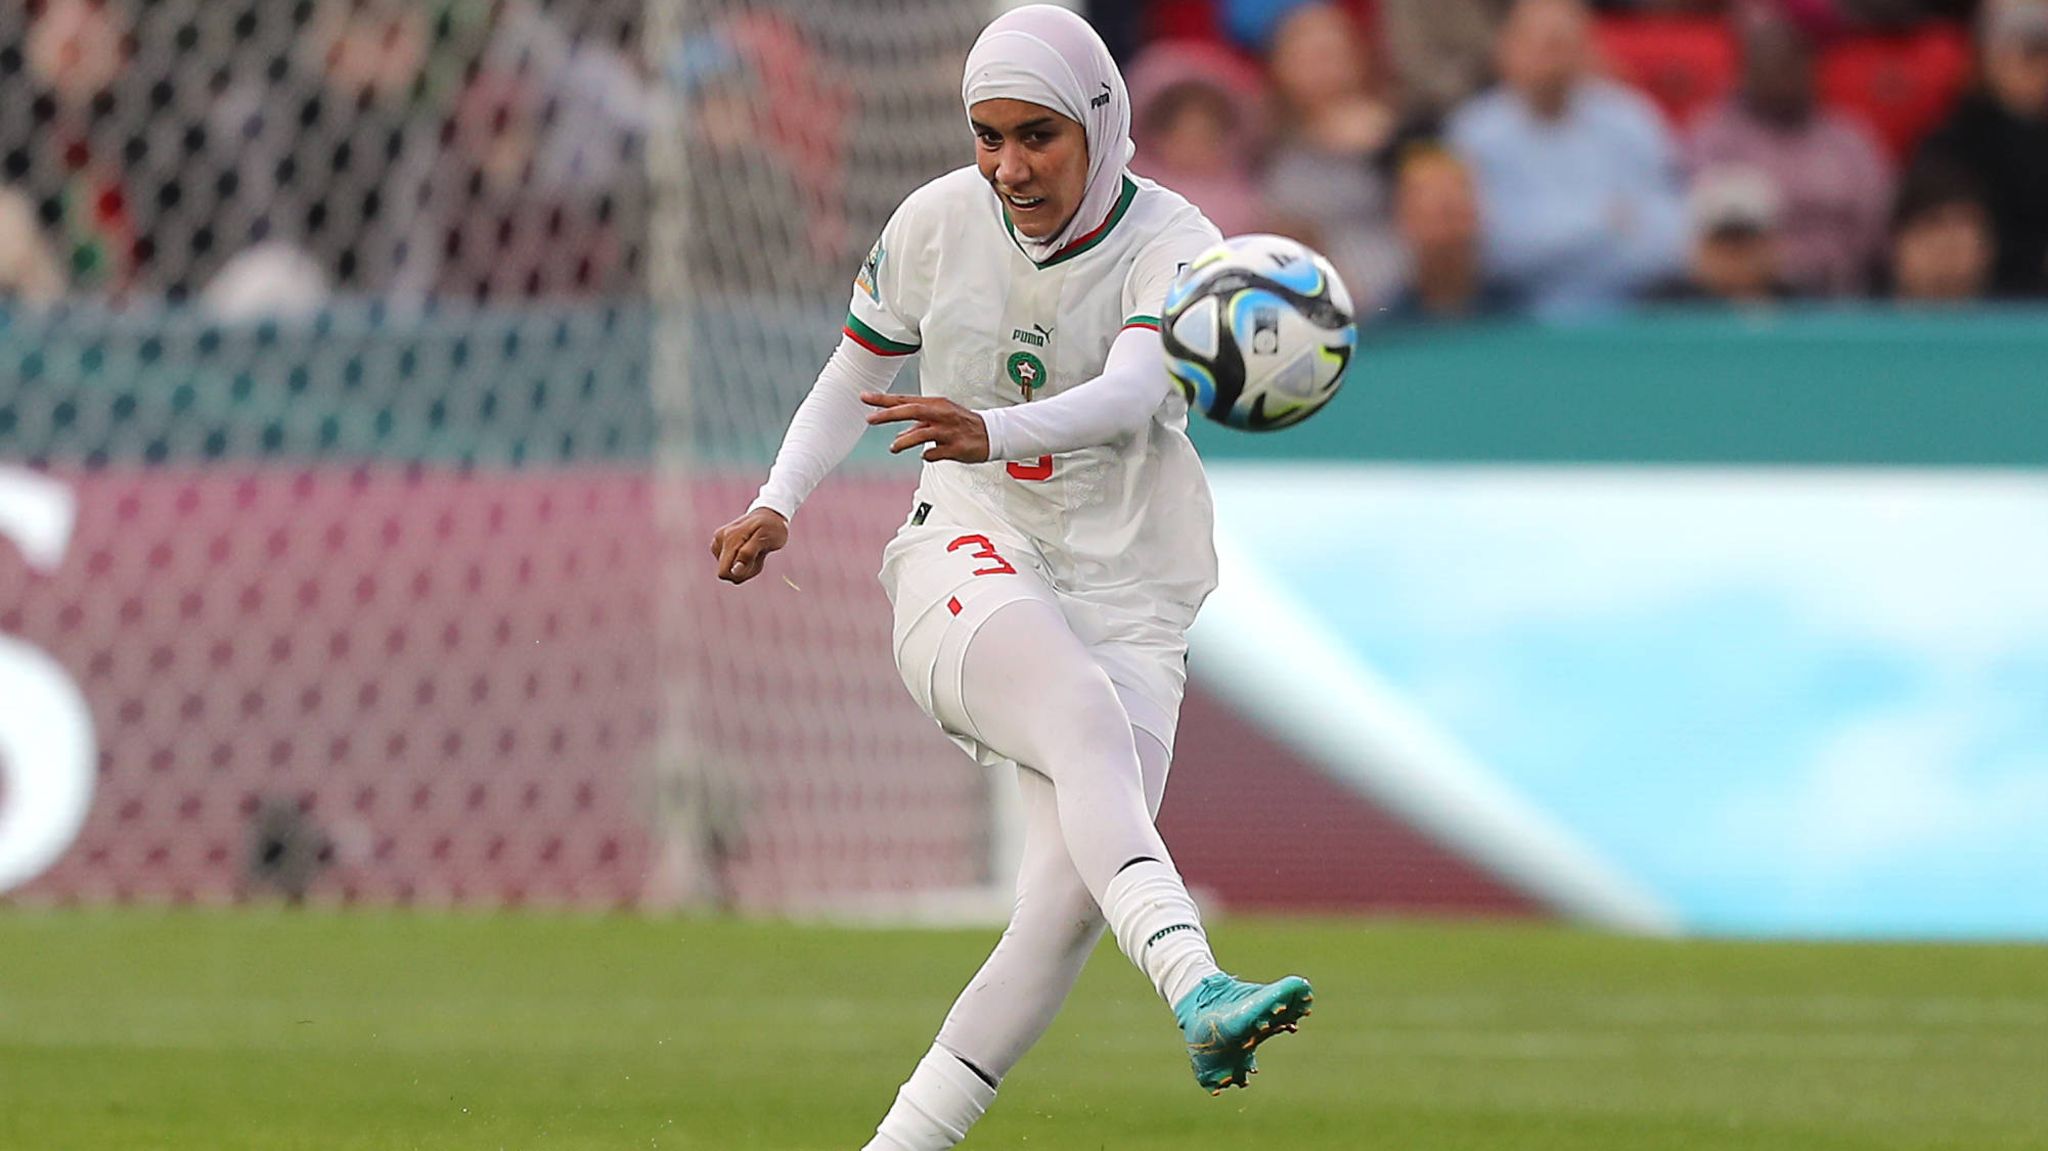 Frauen-WM Marokkanerin läuft als erste Spielerin mit Hidschab auf STERN.de